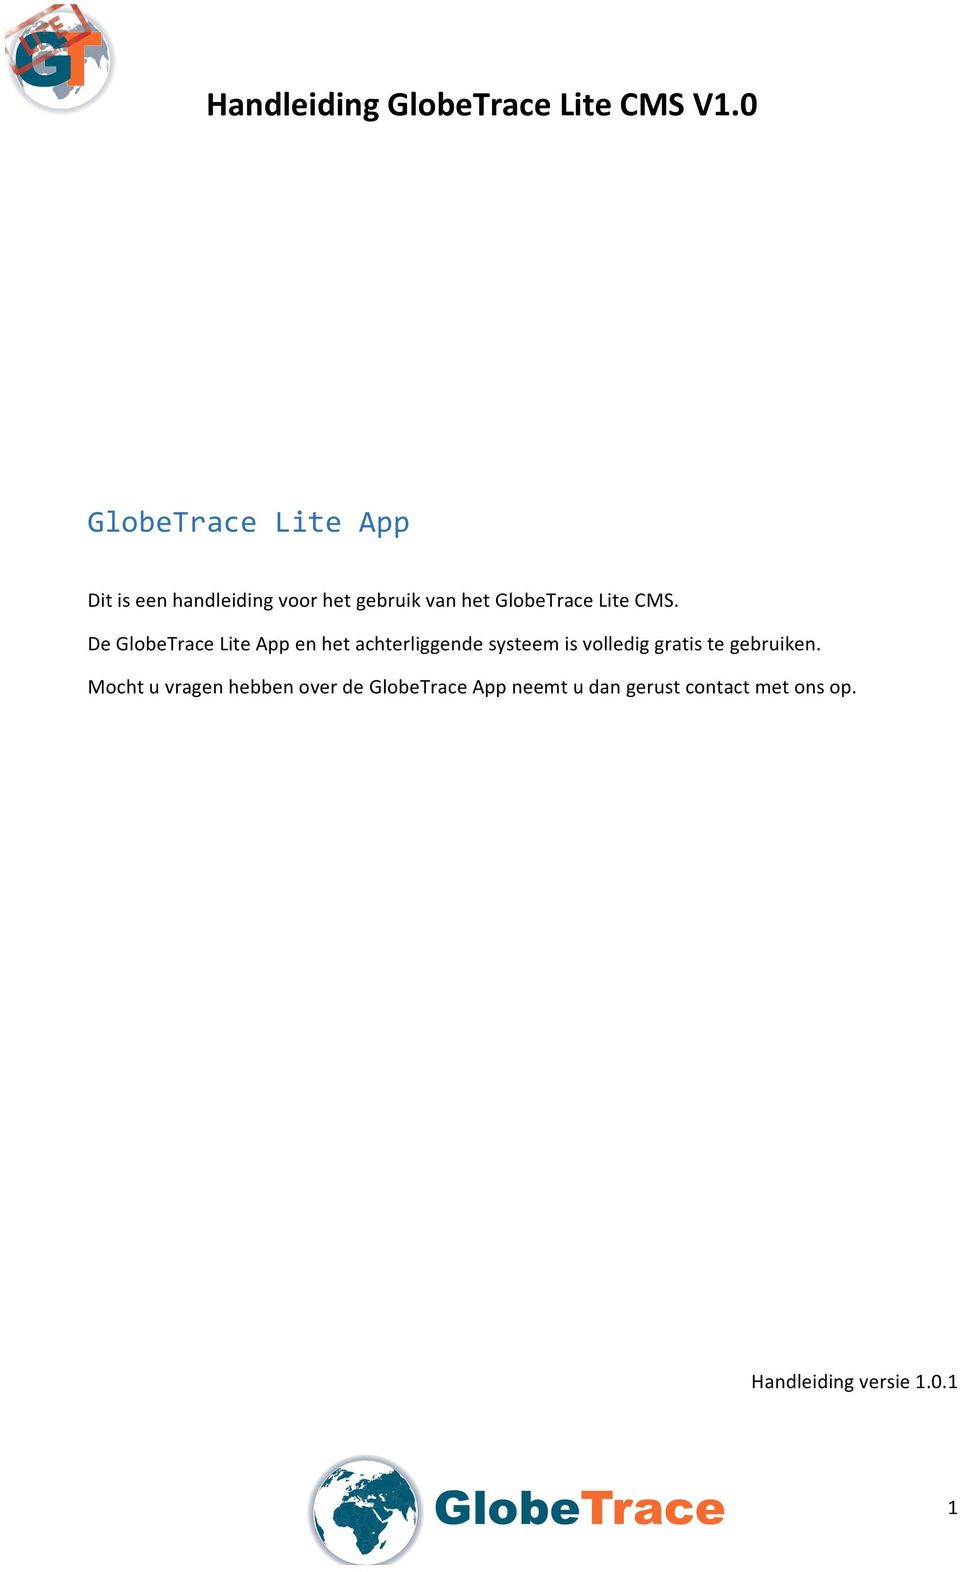 De GlobeTrace Lite App en het achterliggende systeem is volledig gratis